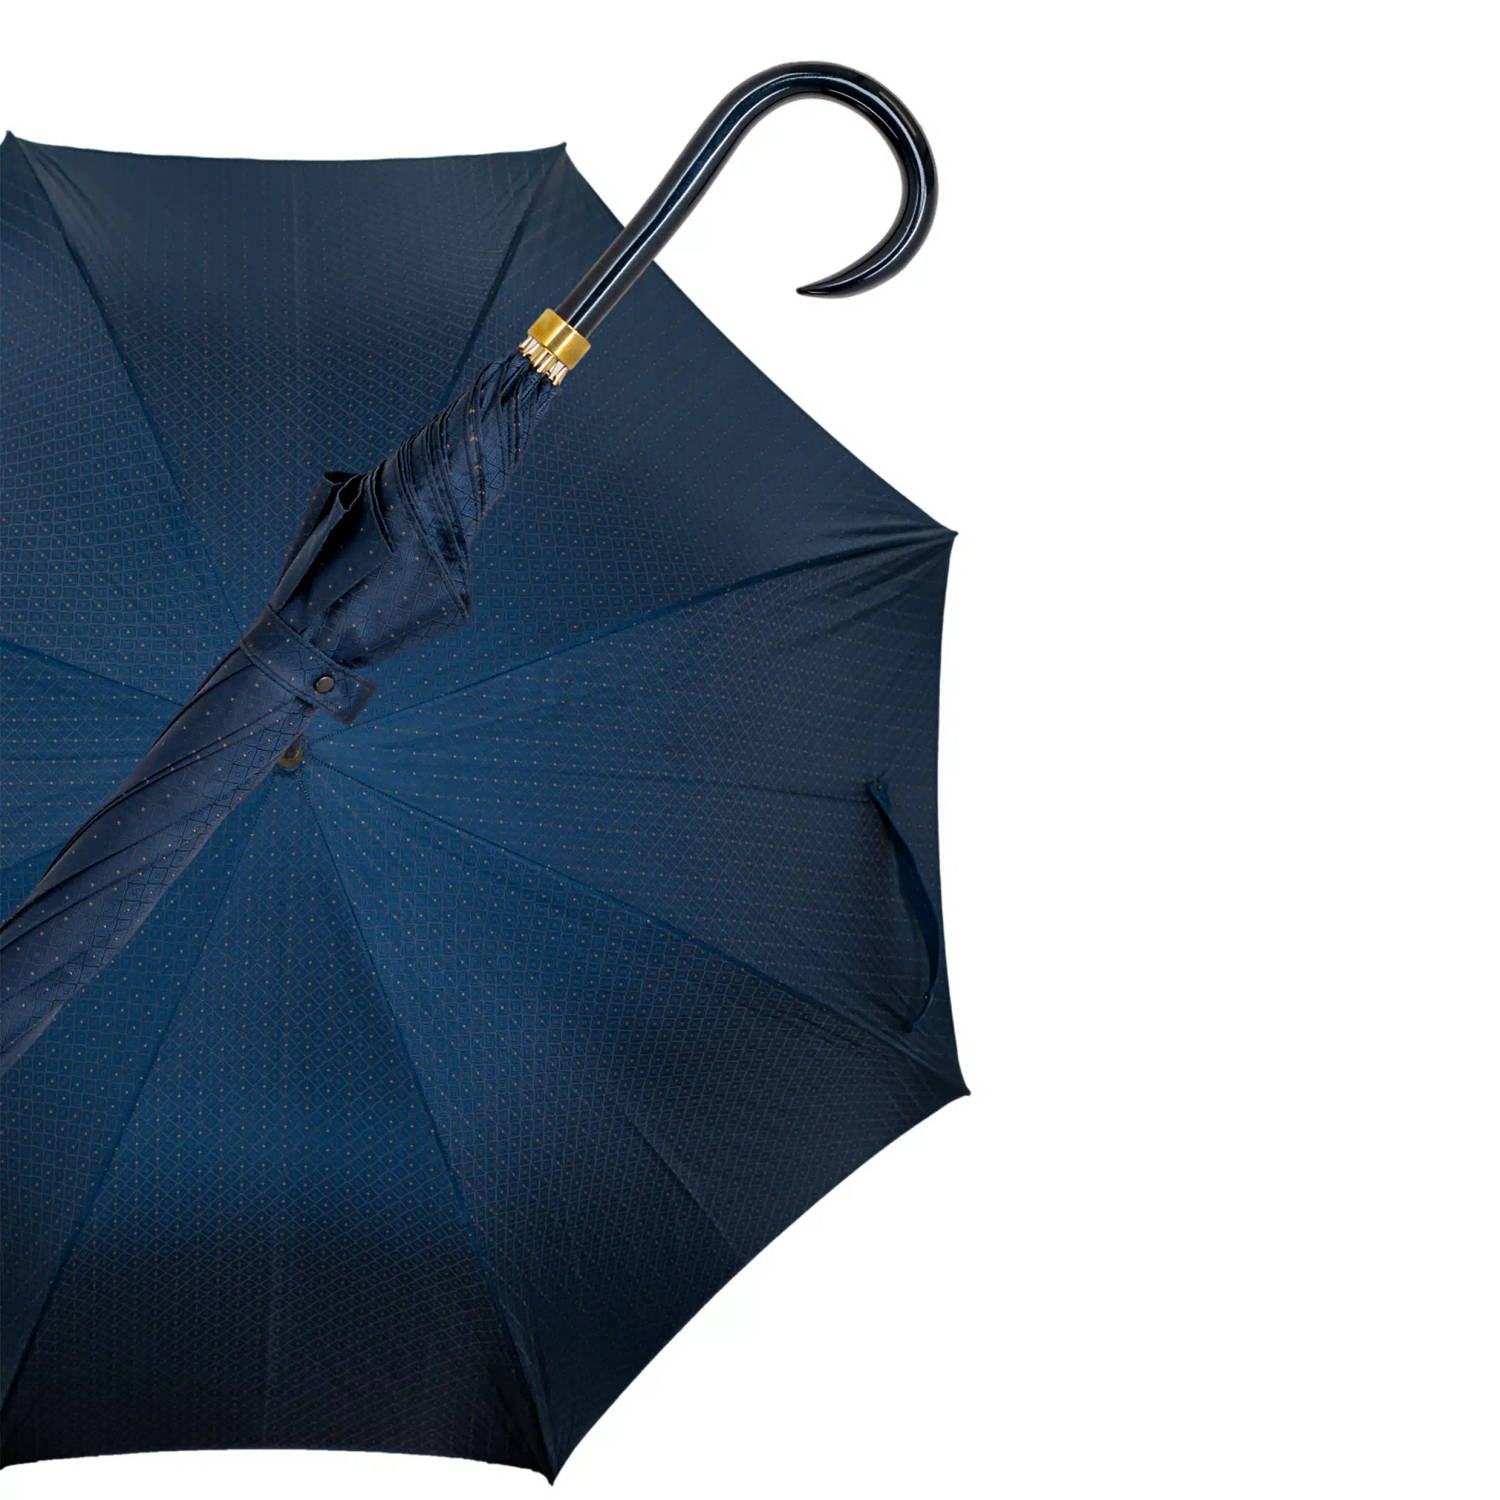 Gastrock Paraplu - Italiaanse satijn stof - Donkerblauw - Gelamineerd essenhout handvat - 61 cm doorsnede - 91 cm lang